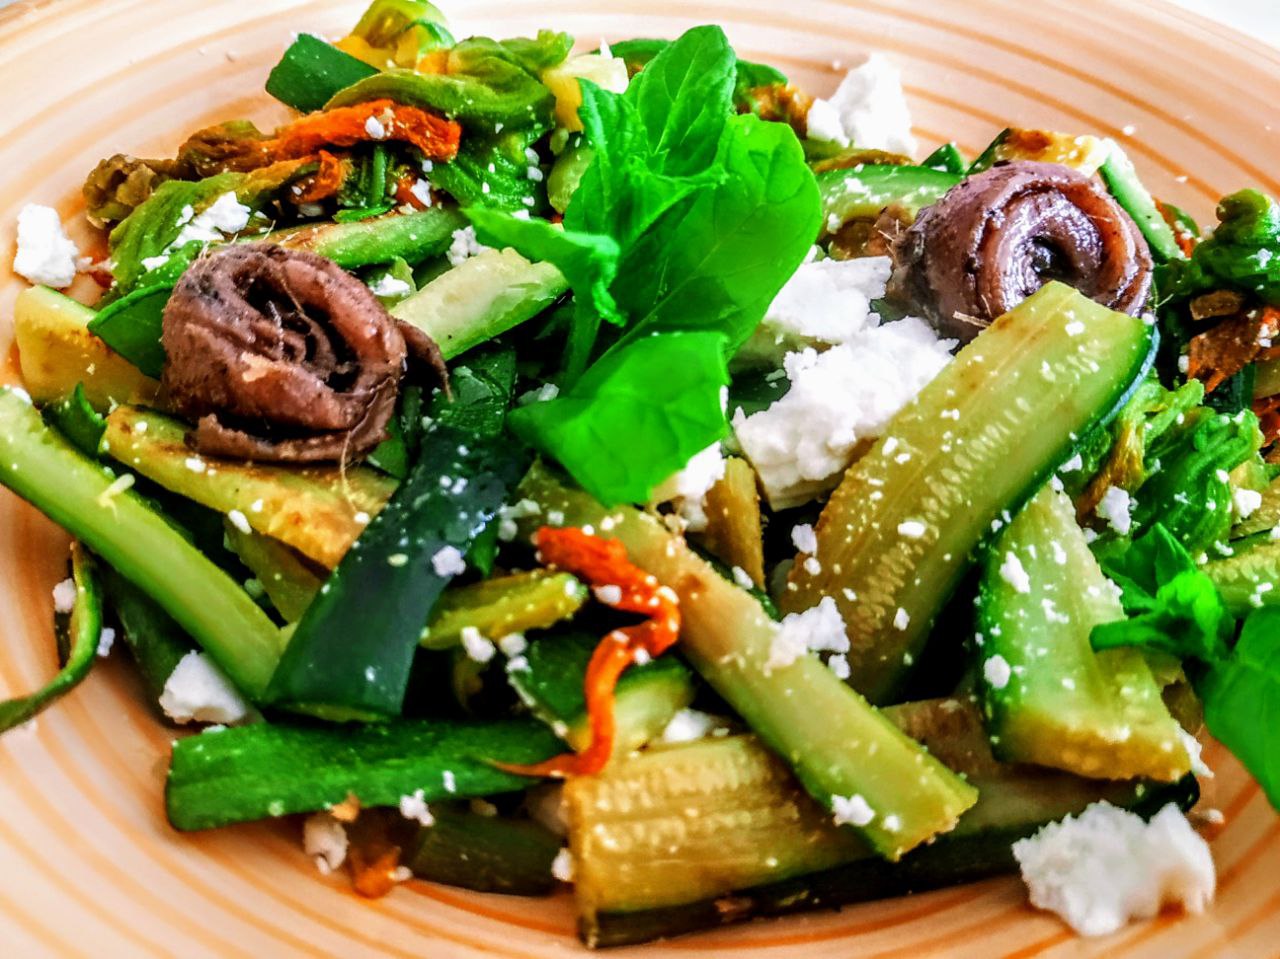 Secondi piatti vegetariani semplici e veloci: padellata di zucchine e fiori con feta greca e acciughe alle erbe aromatiche!